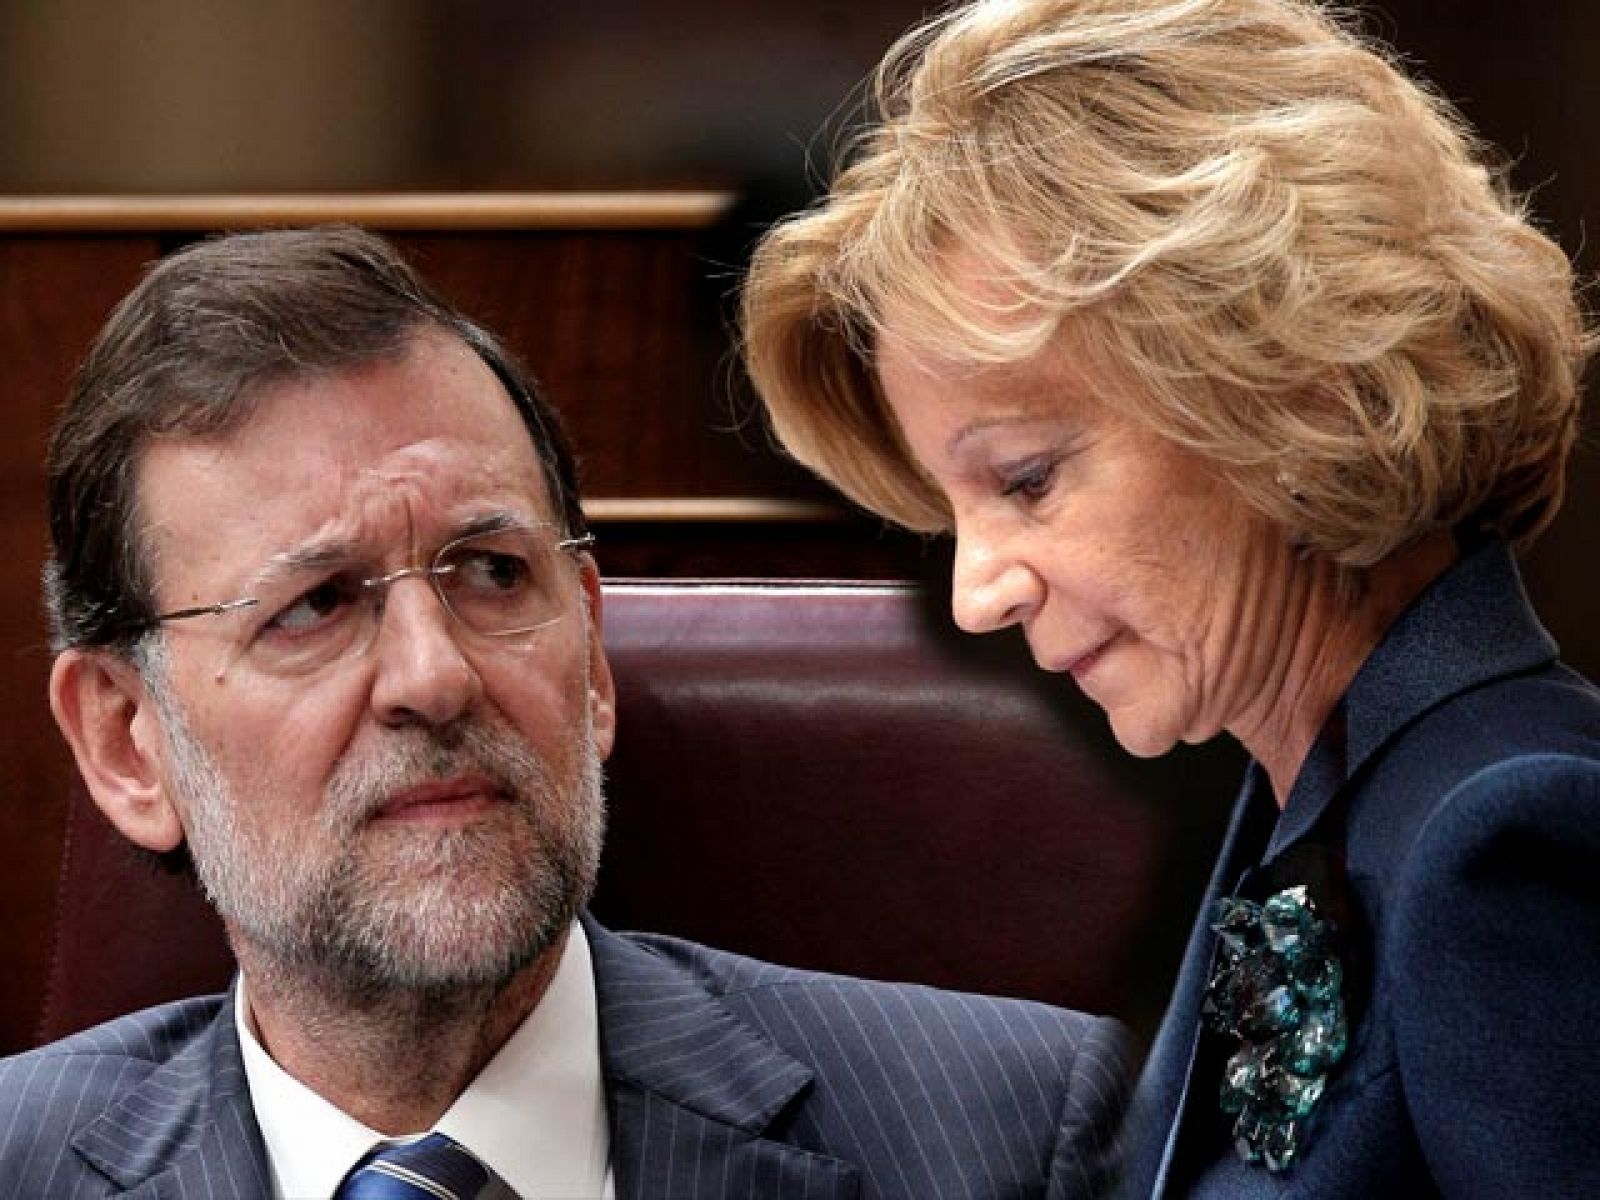 La ministra de Economía y Hacienda ha sacado a colación los acuerdos que el ex presidente José María Aznar selló en 1996 con CiU, PNV y CC para llegar a la Moncloa.